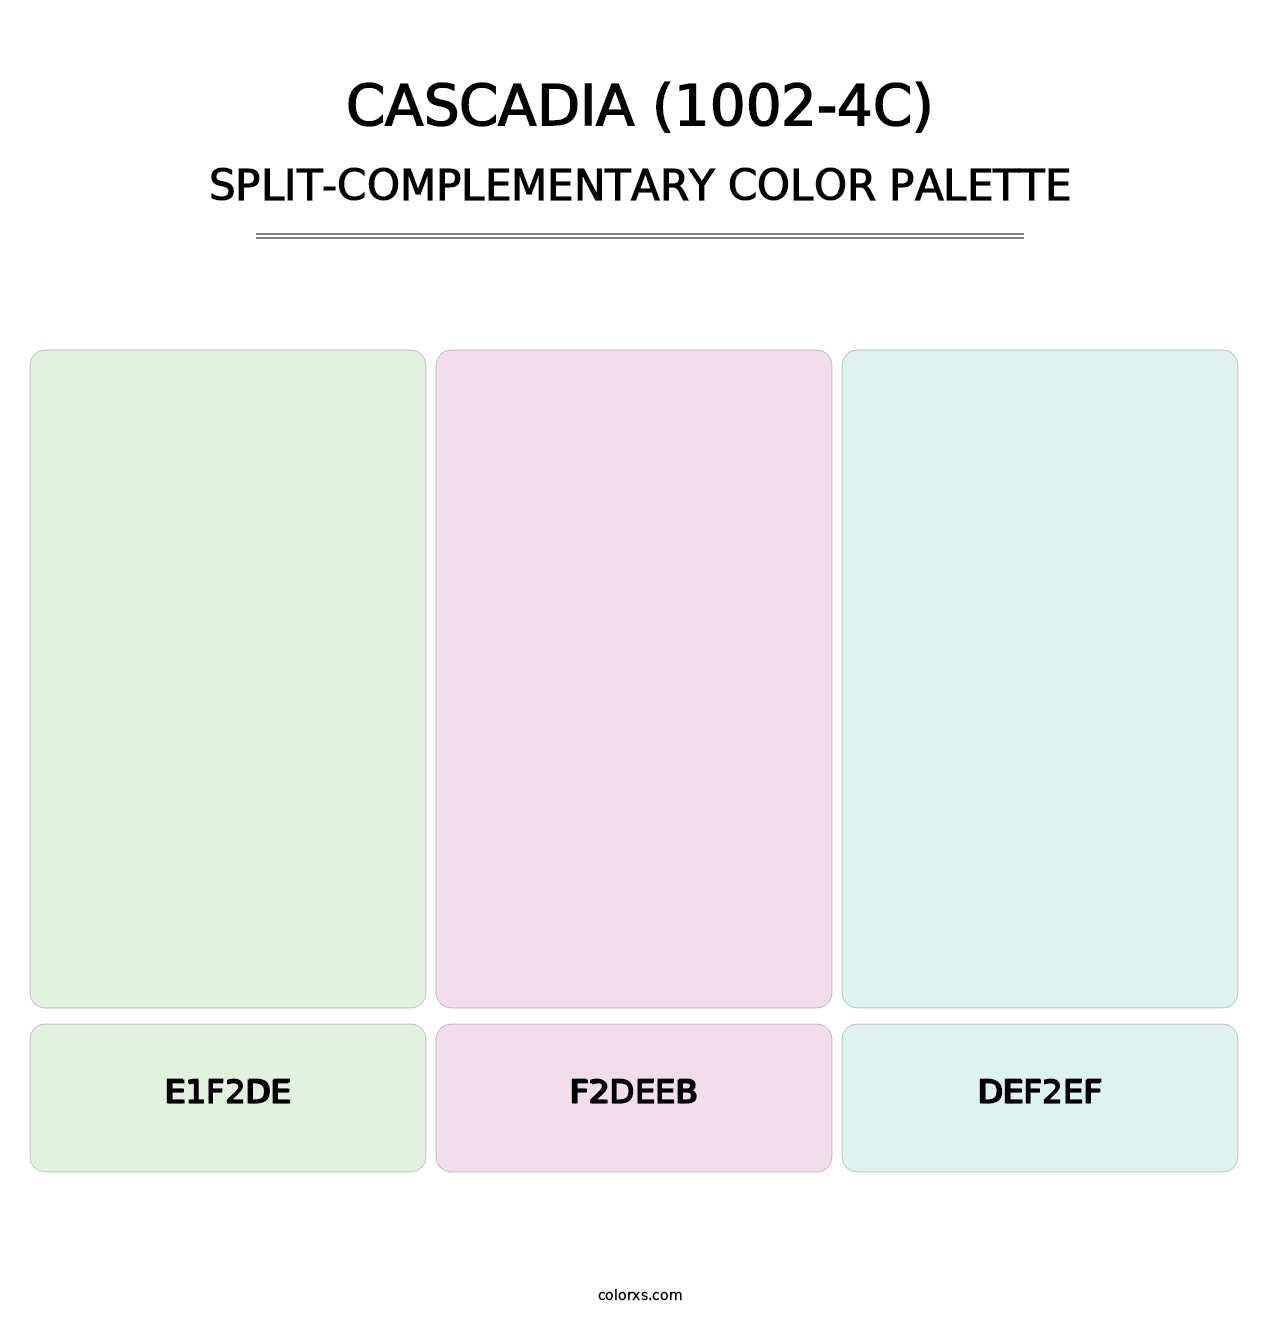 Cascadia (1002-4C) - Split-Complementary Color Palette